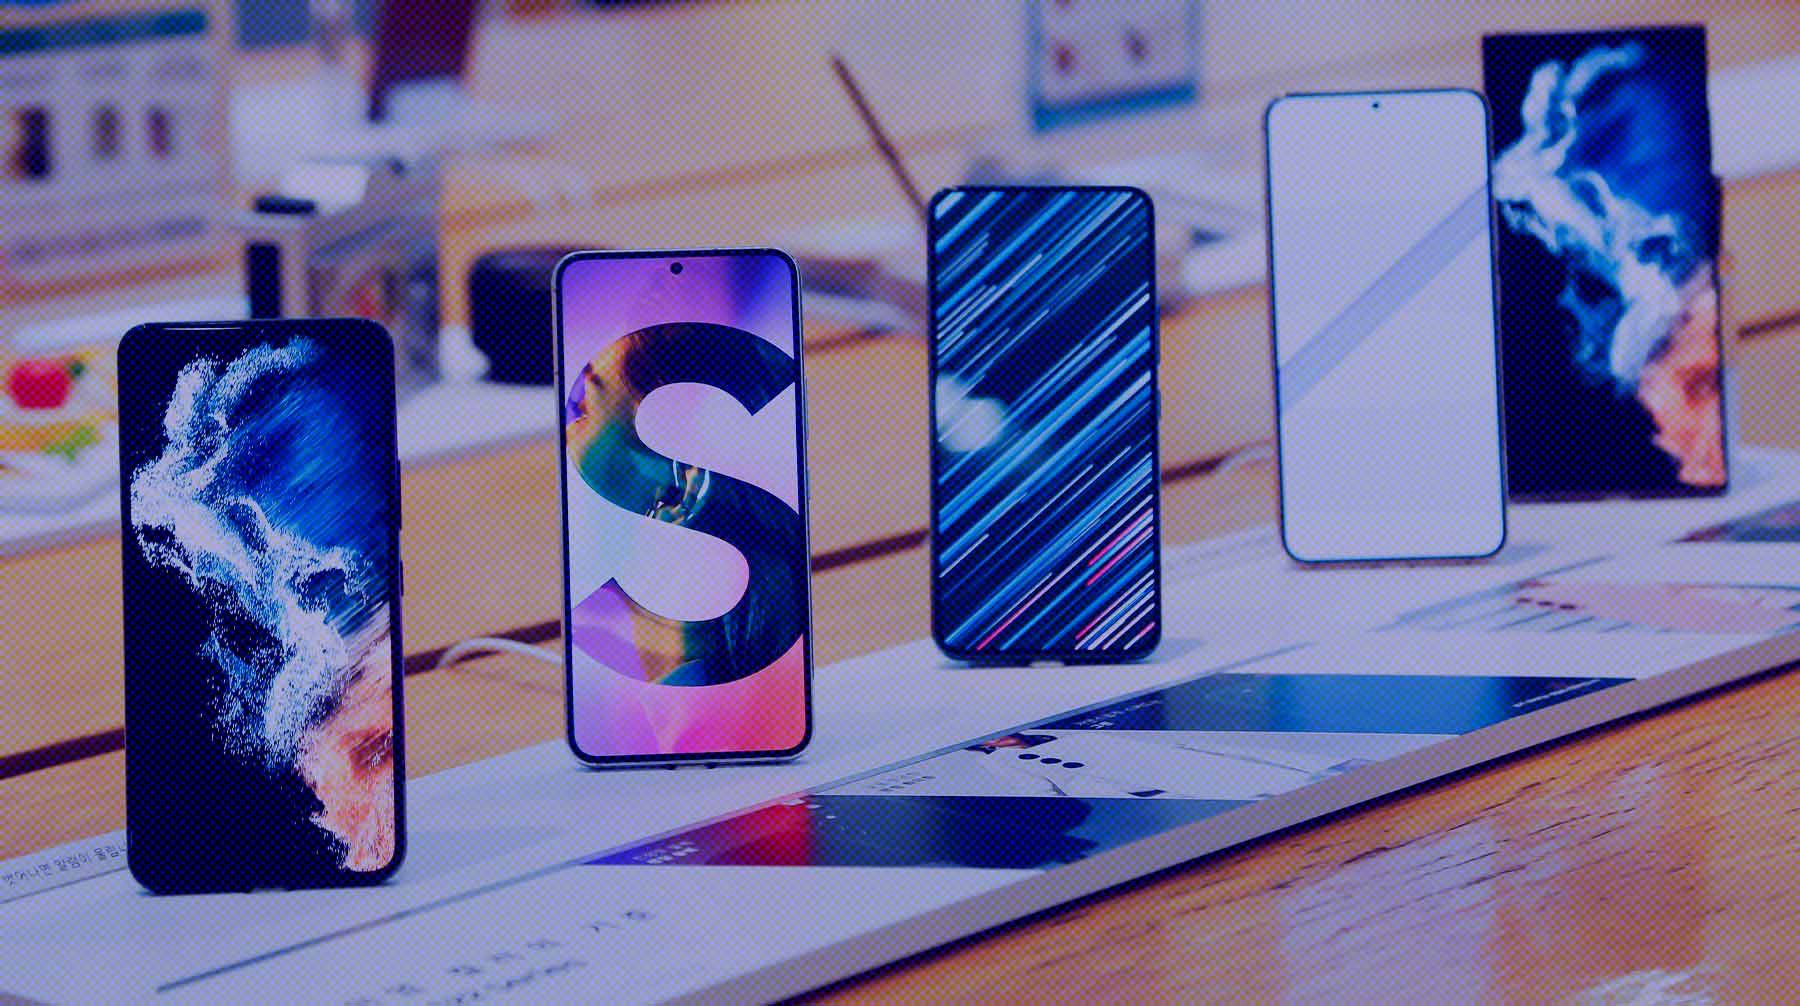 Dailystorm - Айтишник Муратчаев объяснил, какие телефоны смогут заменить айфоны в случае их полной блокировки или отключения App Store